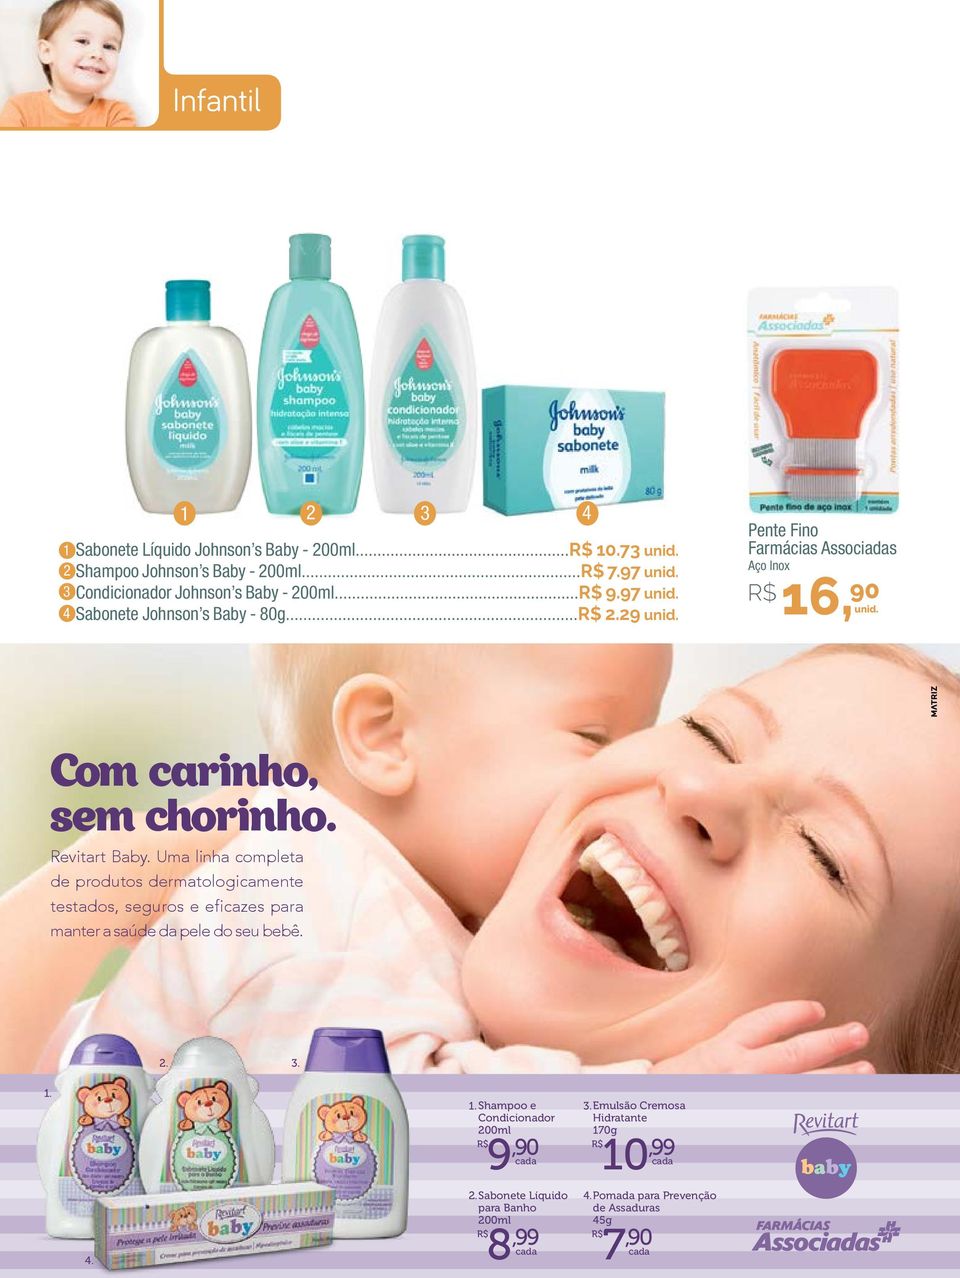 29 4 Pente Fino Farmácias Associadas Aço Inox R$ 16,90 Com carinho, sem chorinho. Revitart Baby.